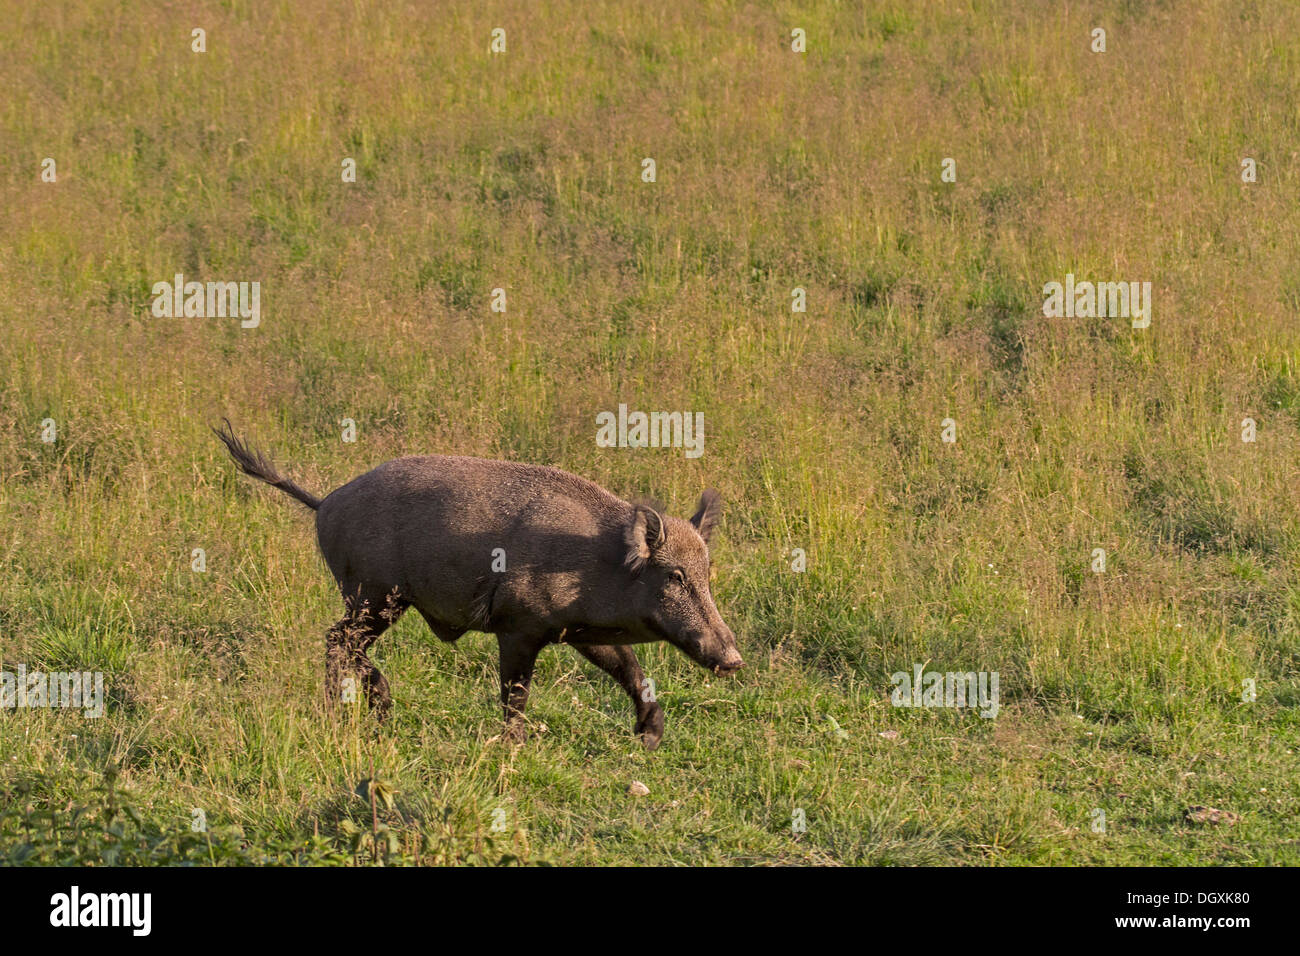 Wild boar in a meadow / Sus scrofa Stock Photo